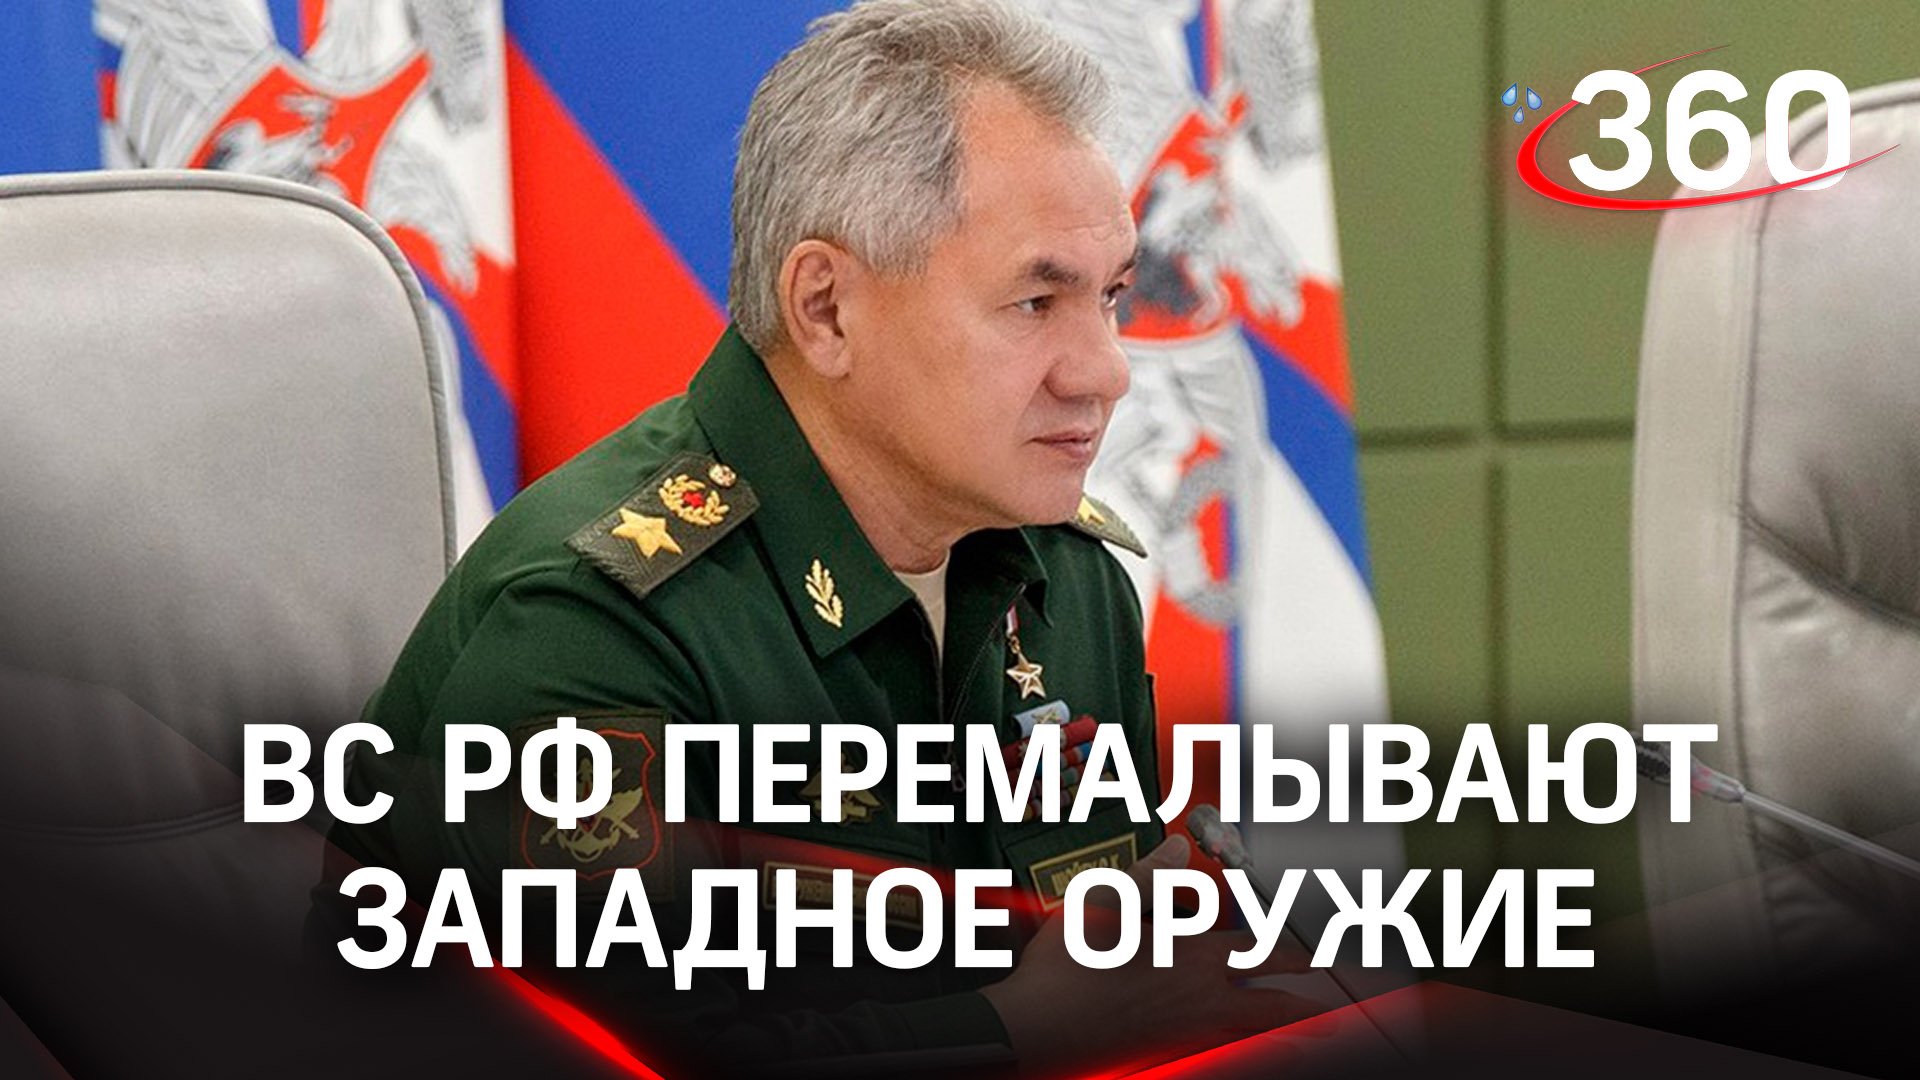 Шойгу рассказал, как российские ВС перемалывают западное оружие на Украине